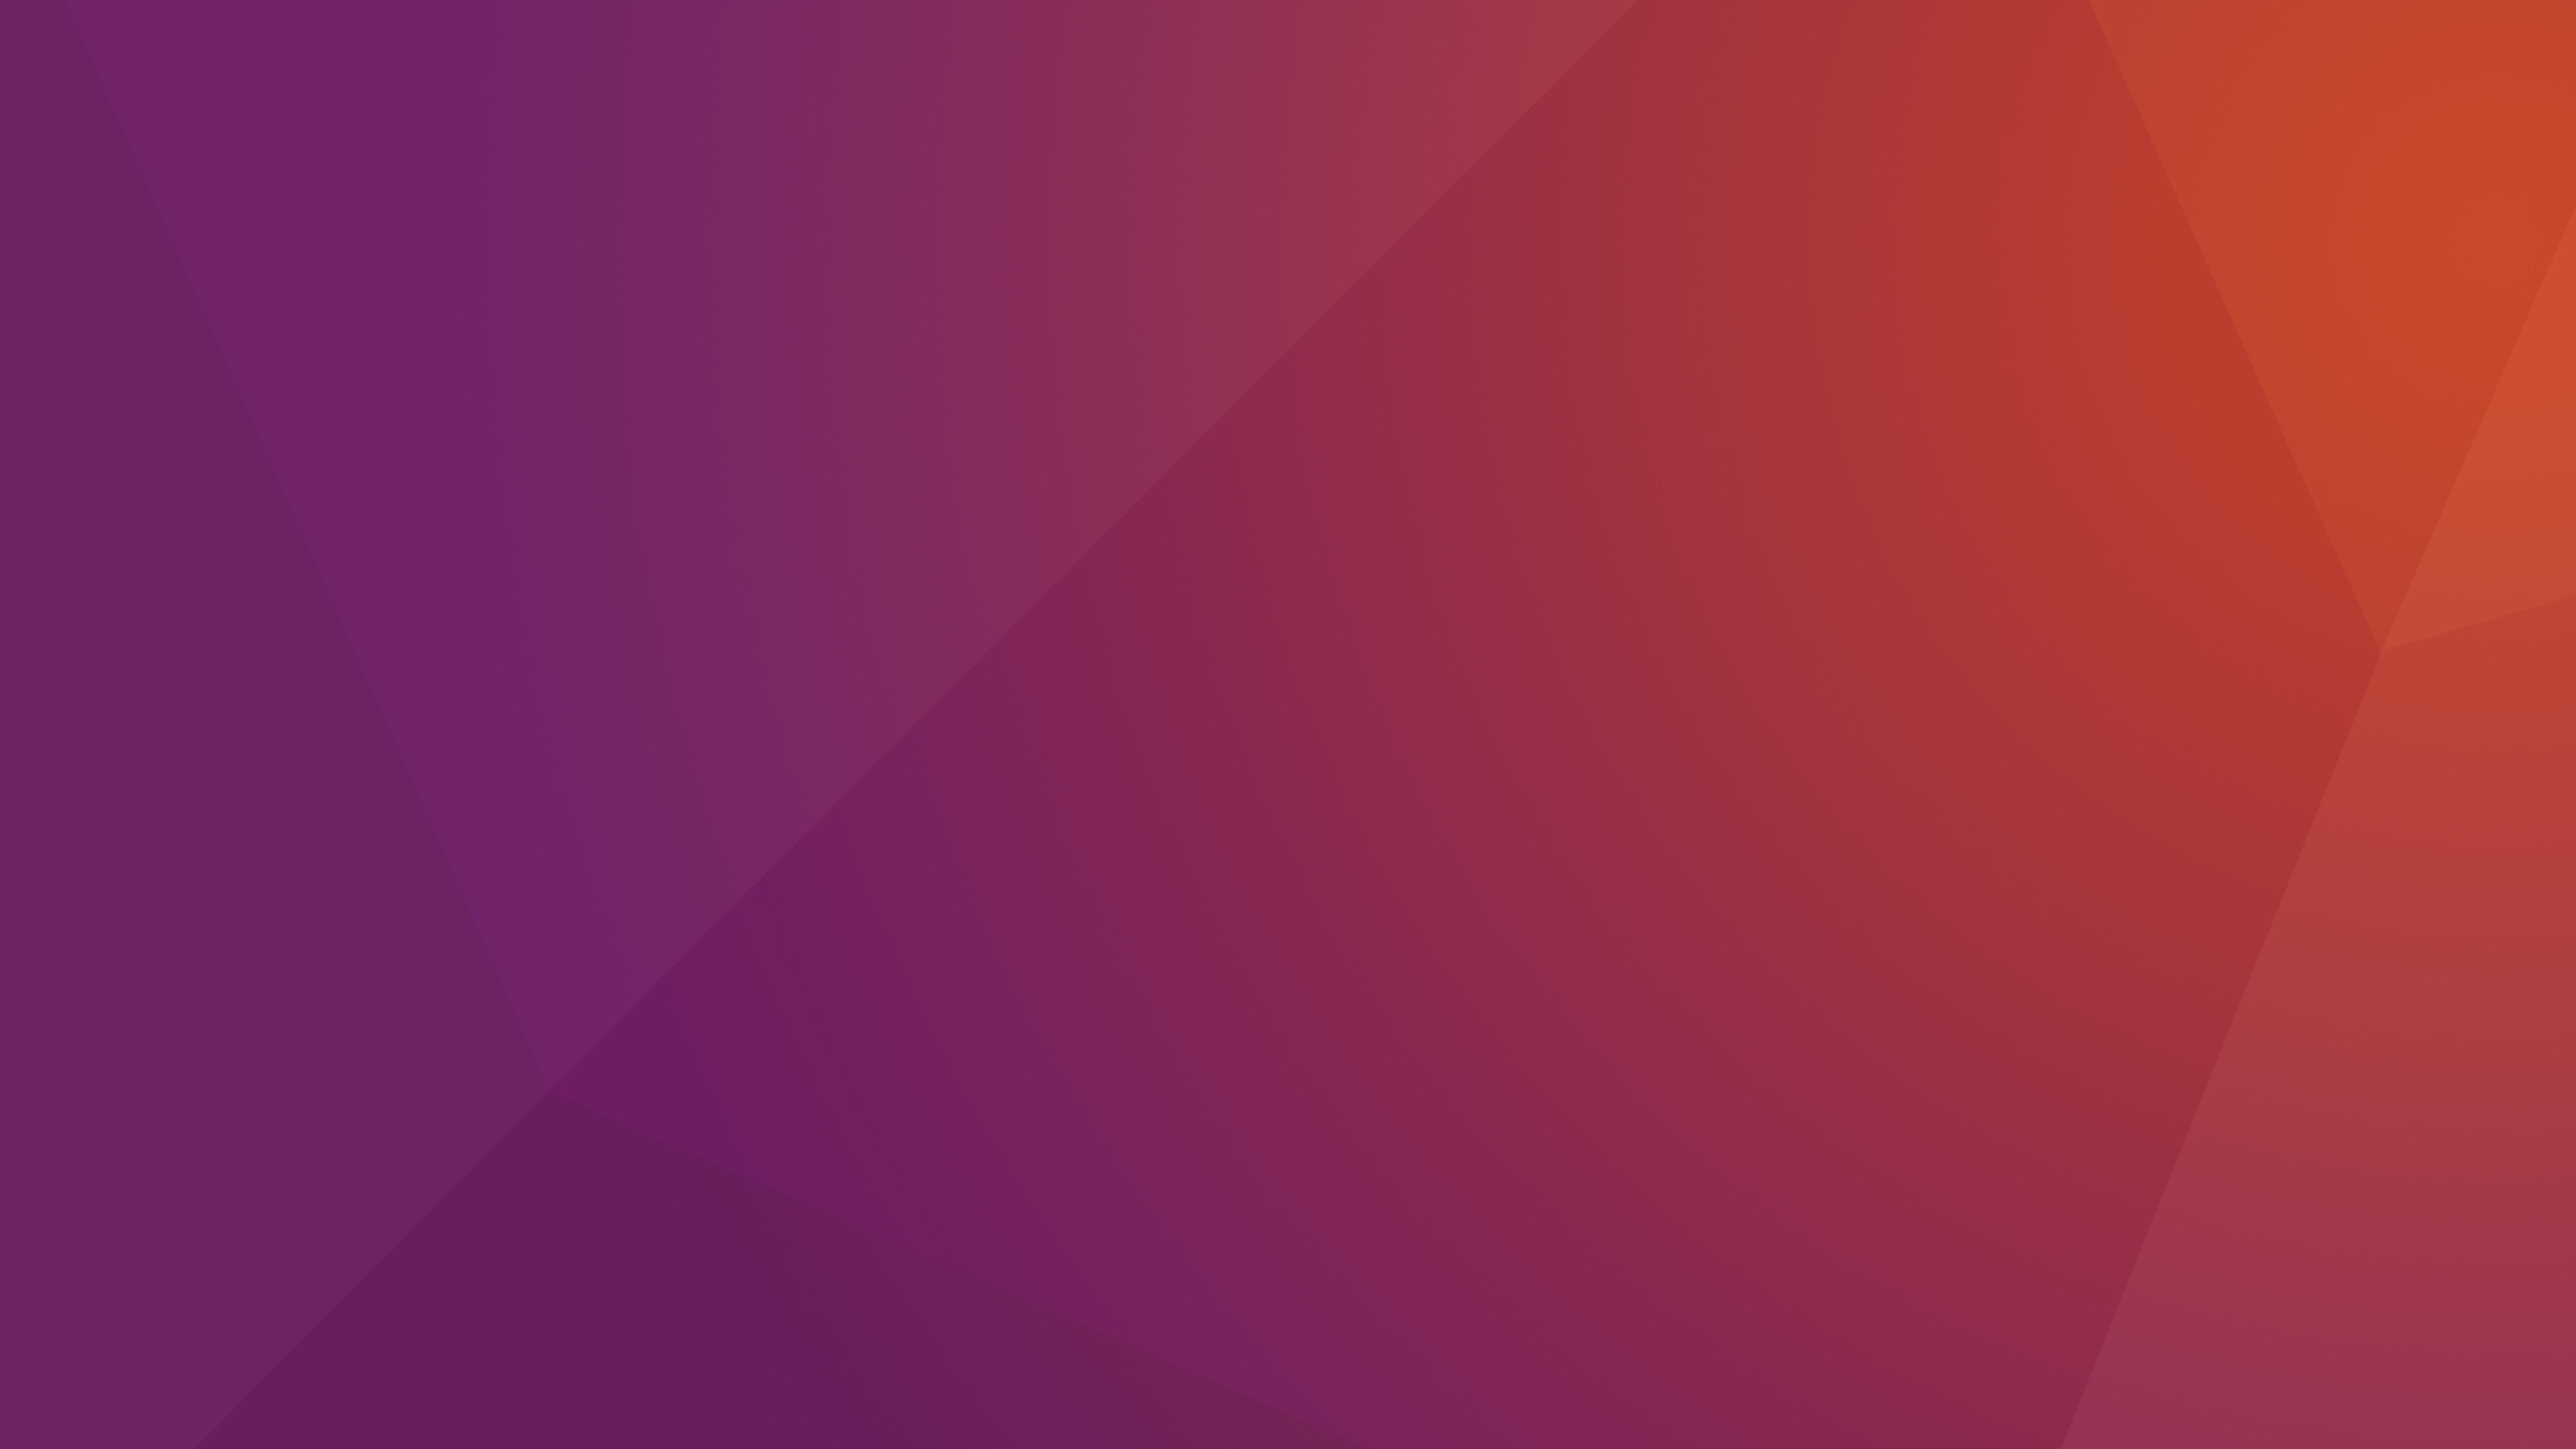 This Is The Default Desktop Wallpaper For Ubuntu